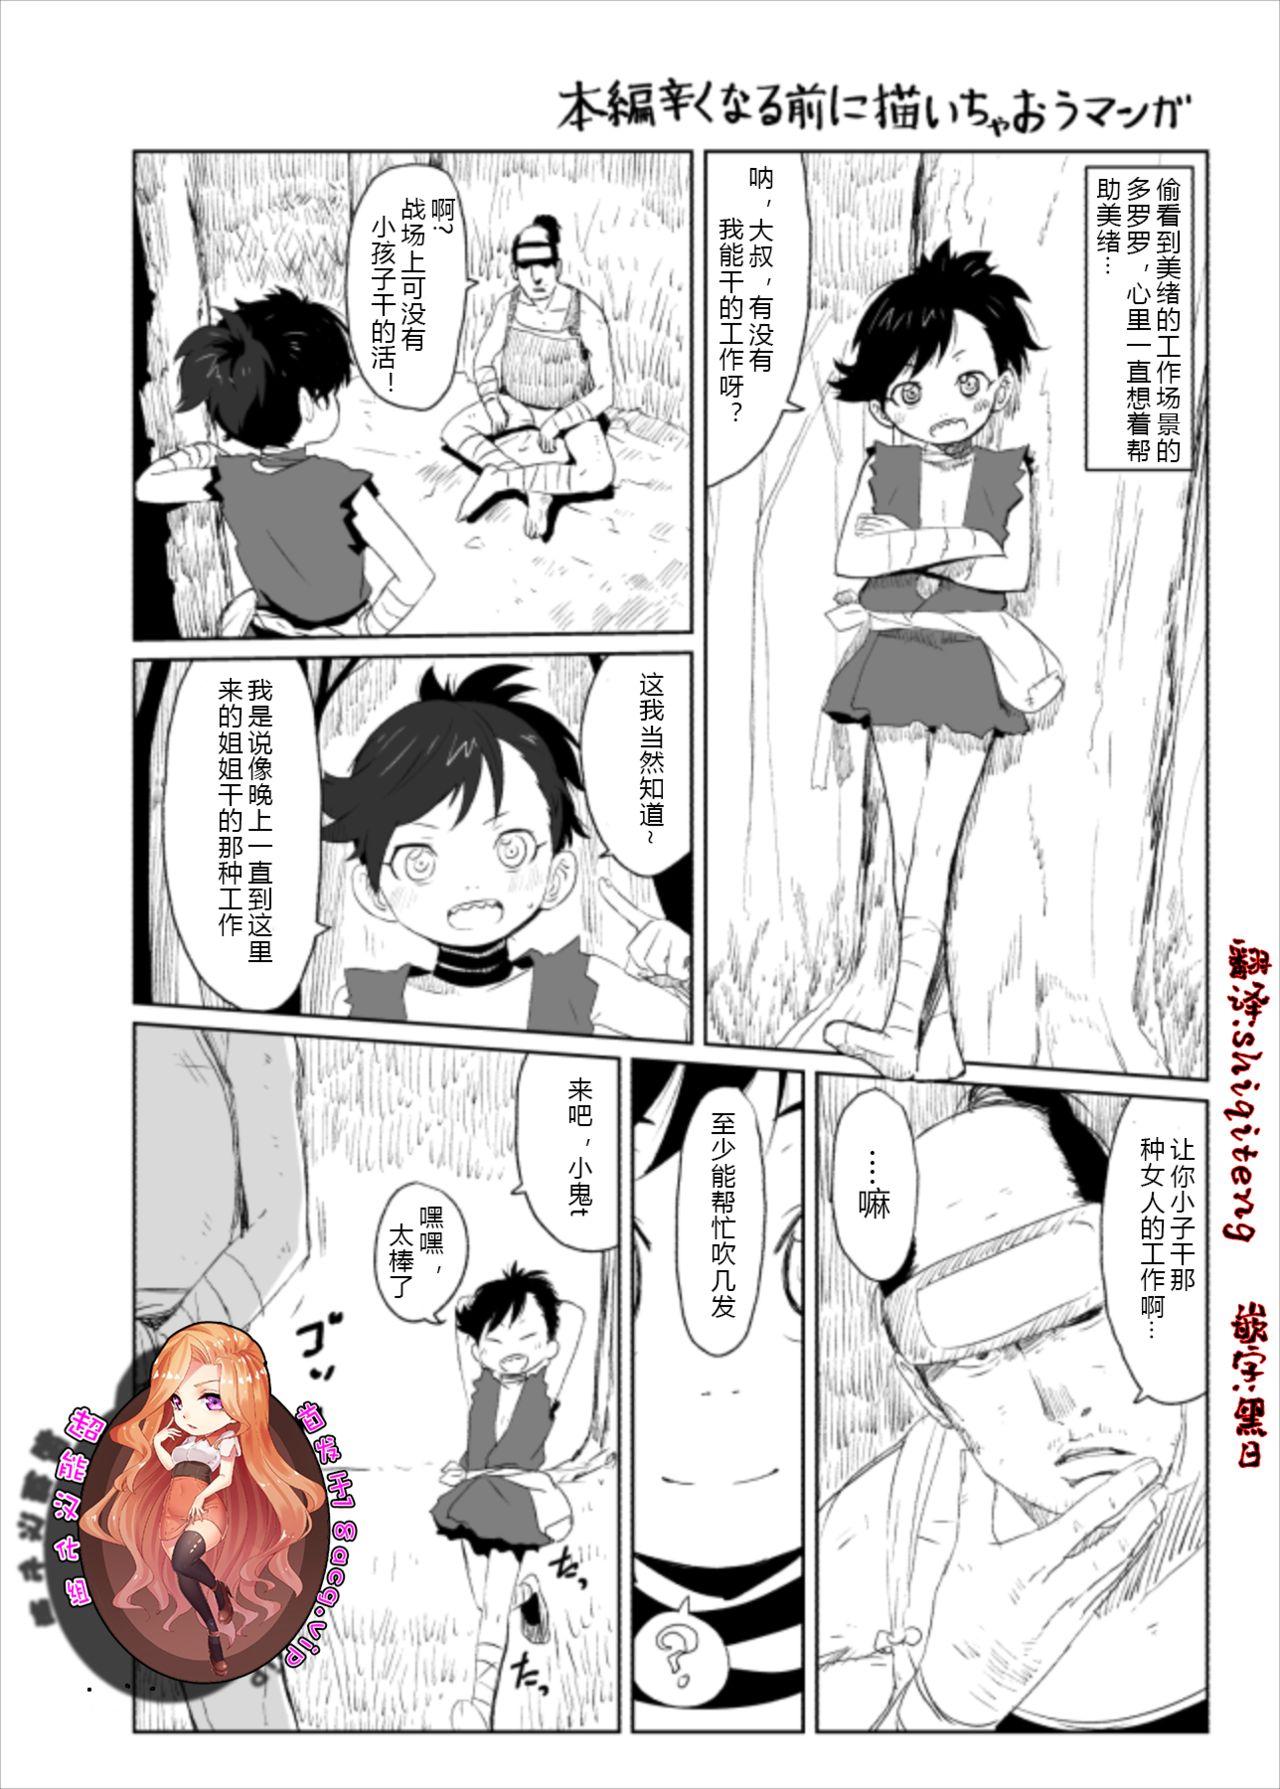 Bareback Dororo Rakugaki Echi Manga - Dororo Trimmed - Picture 1